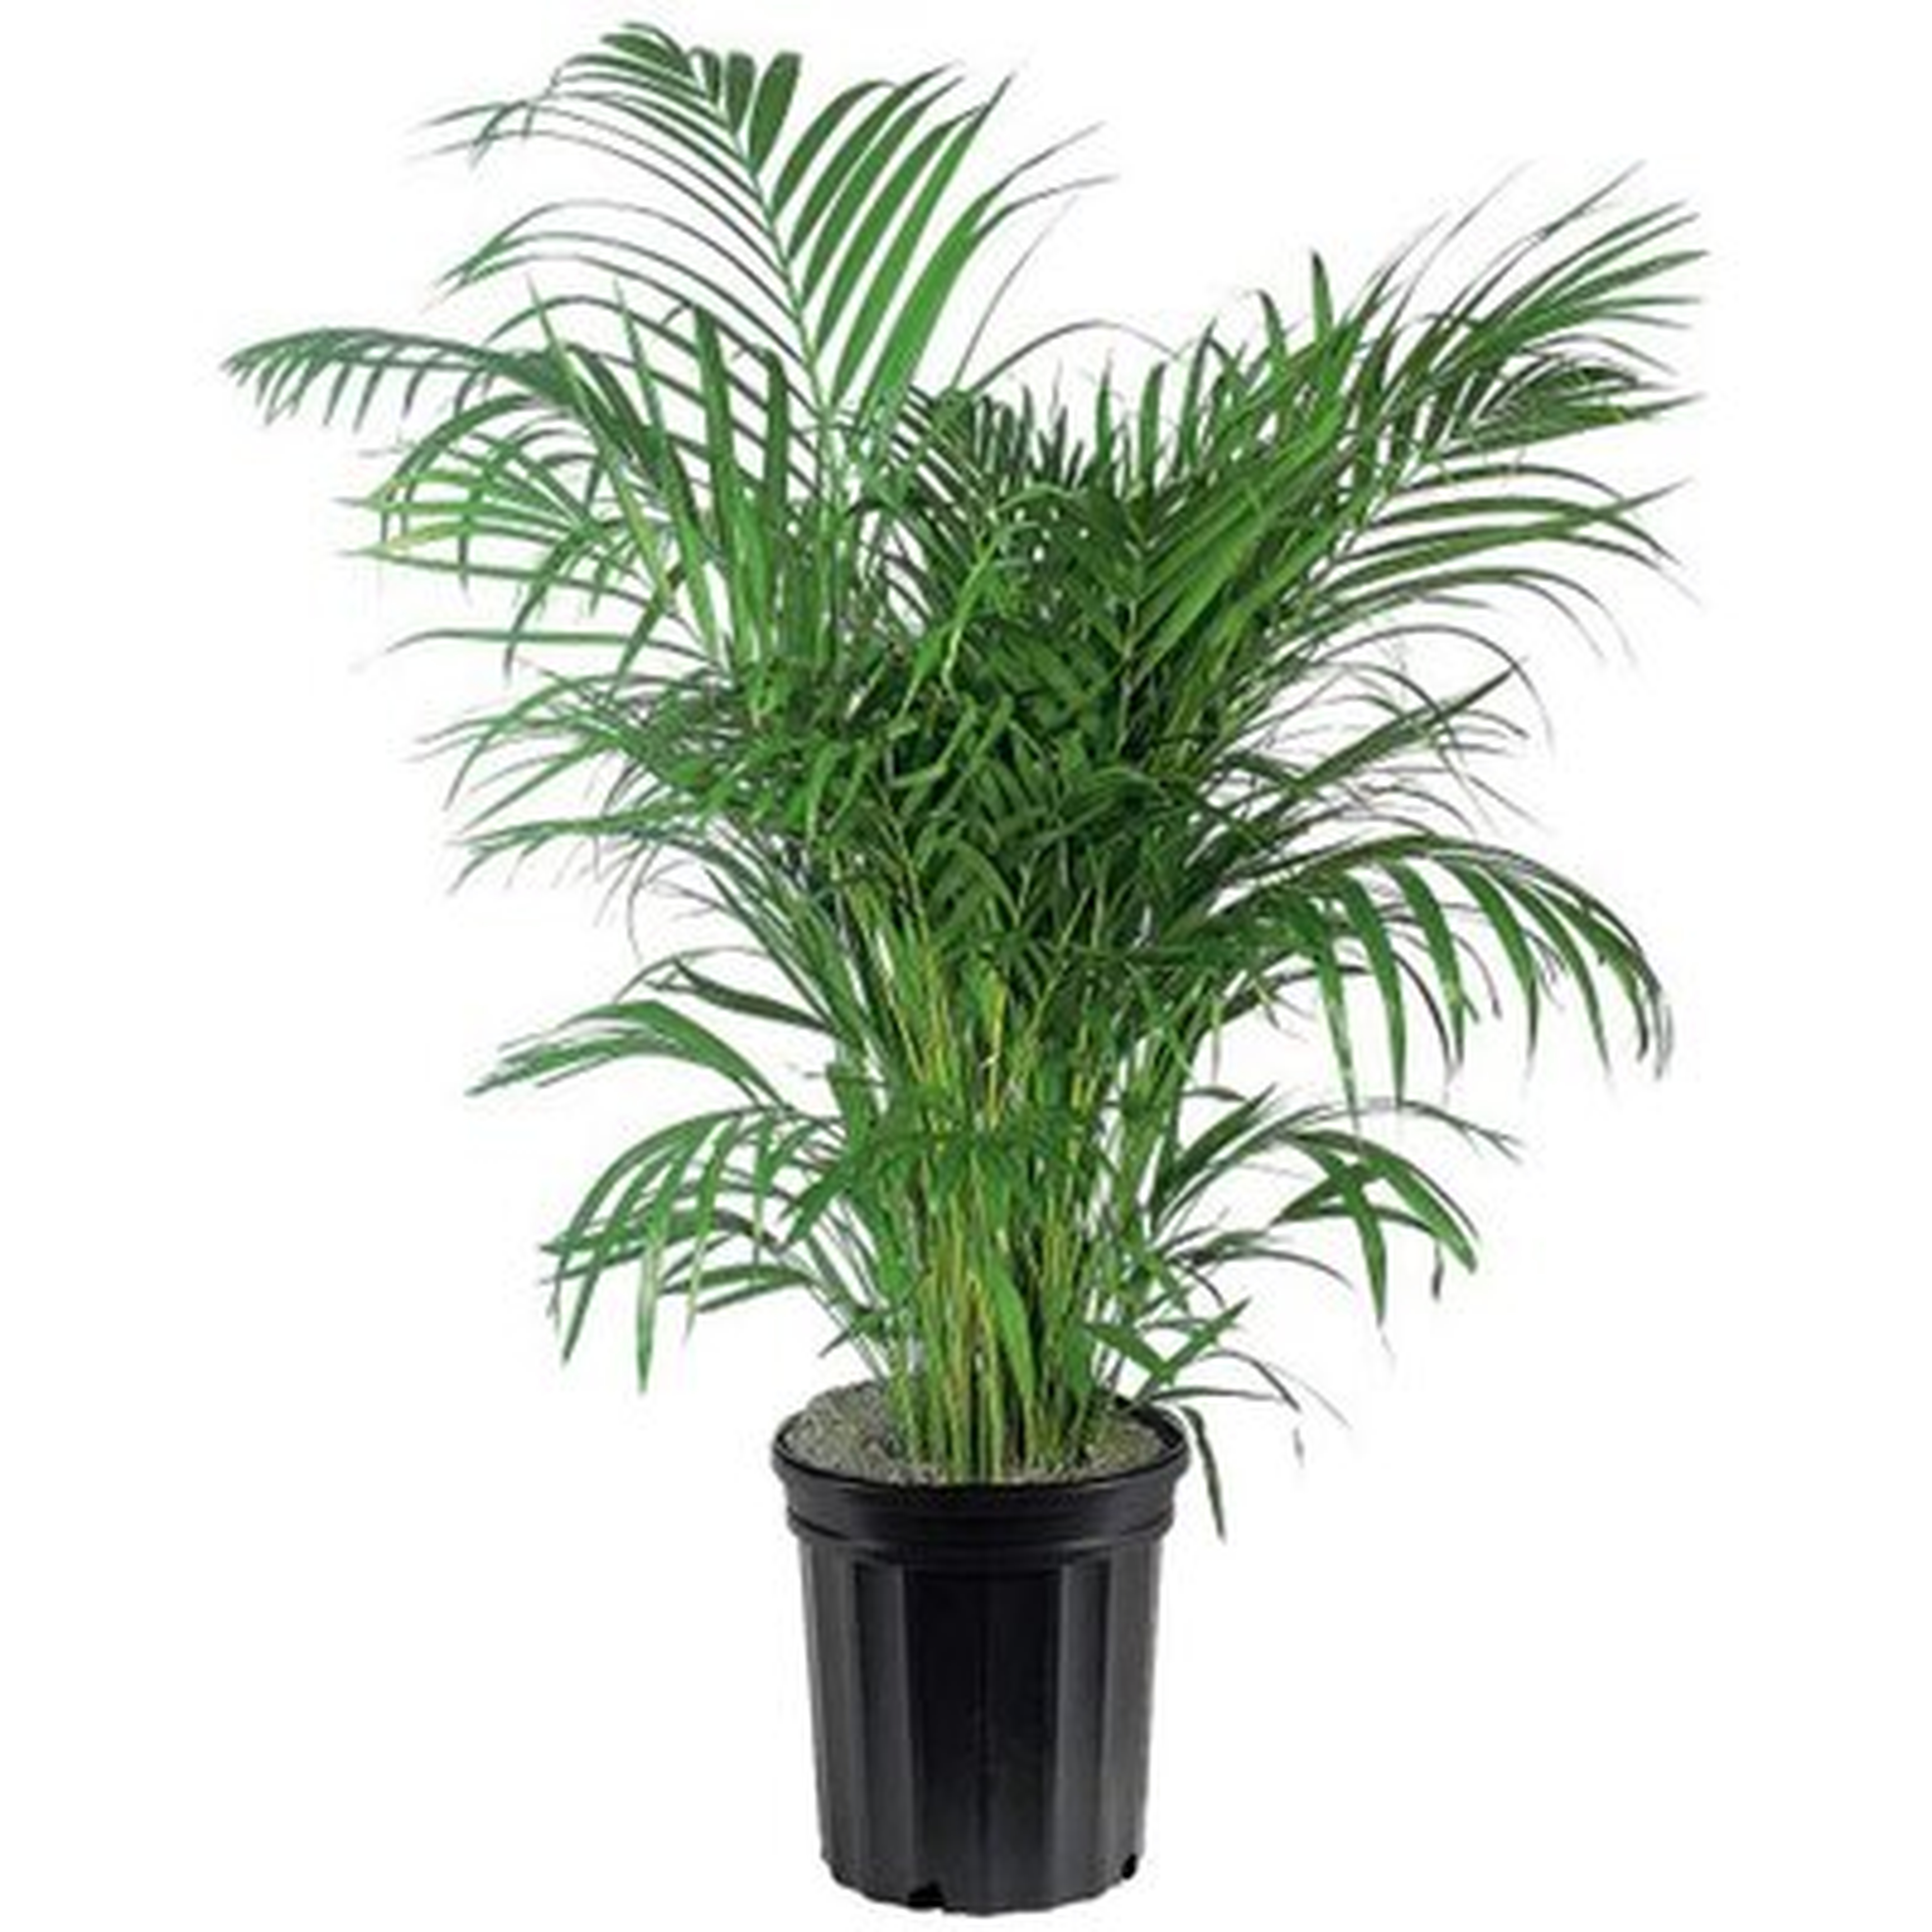 Areca Palm Live Plant 10" Pot Top Indoor Air Purifier - Wayfair